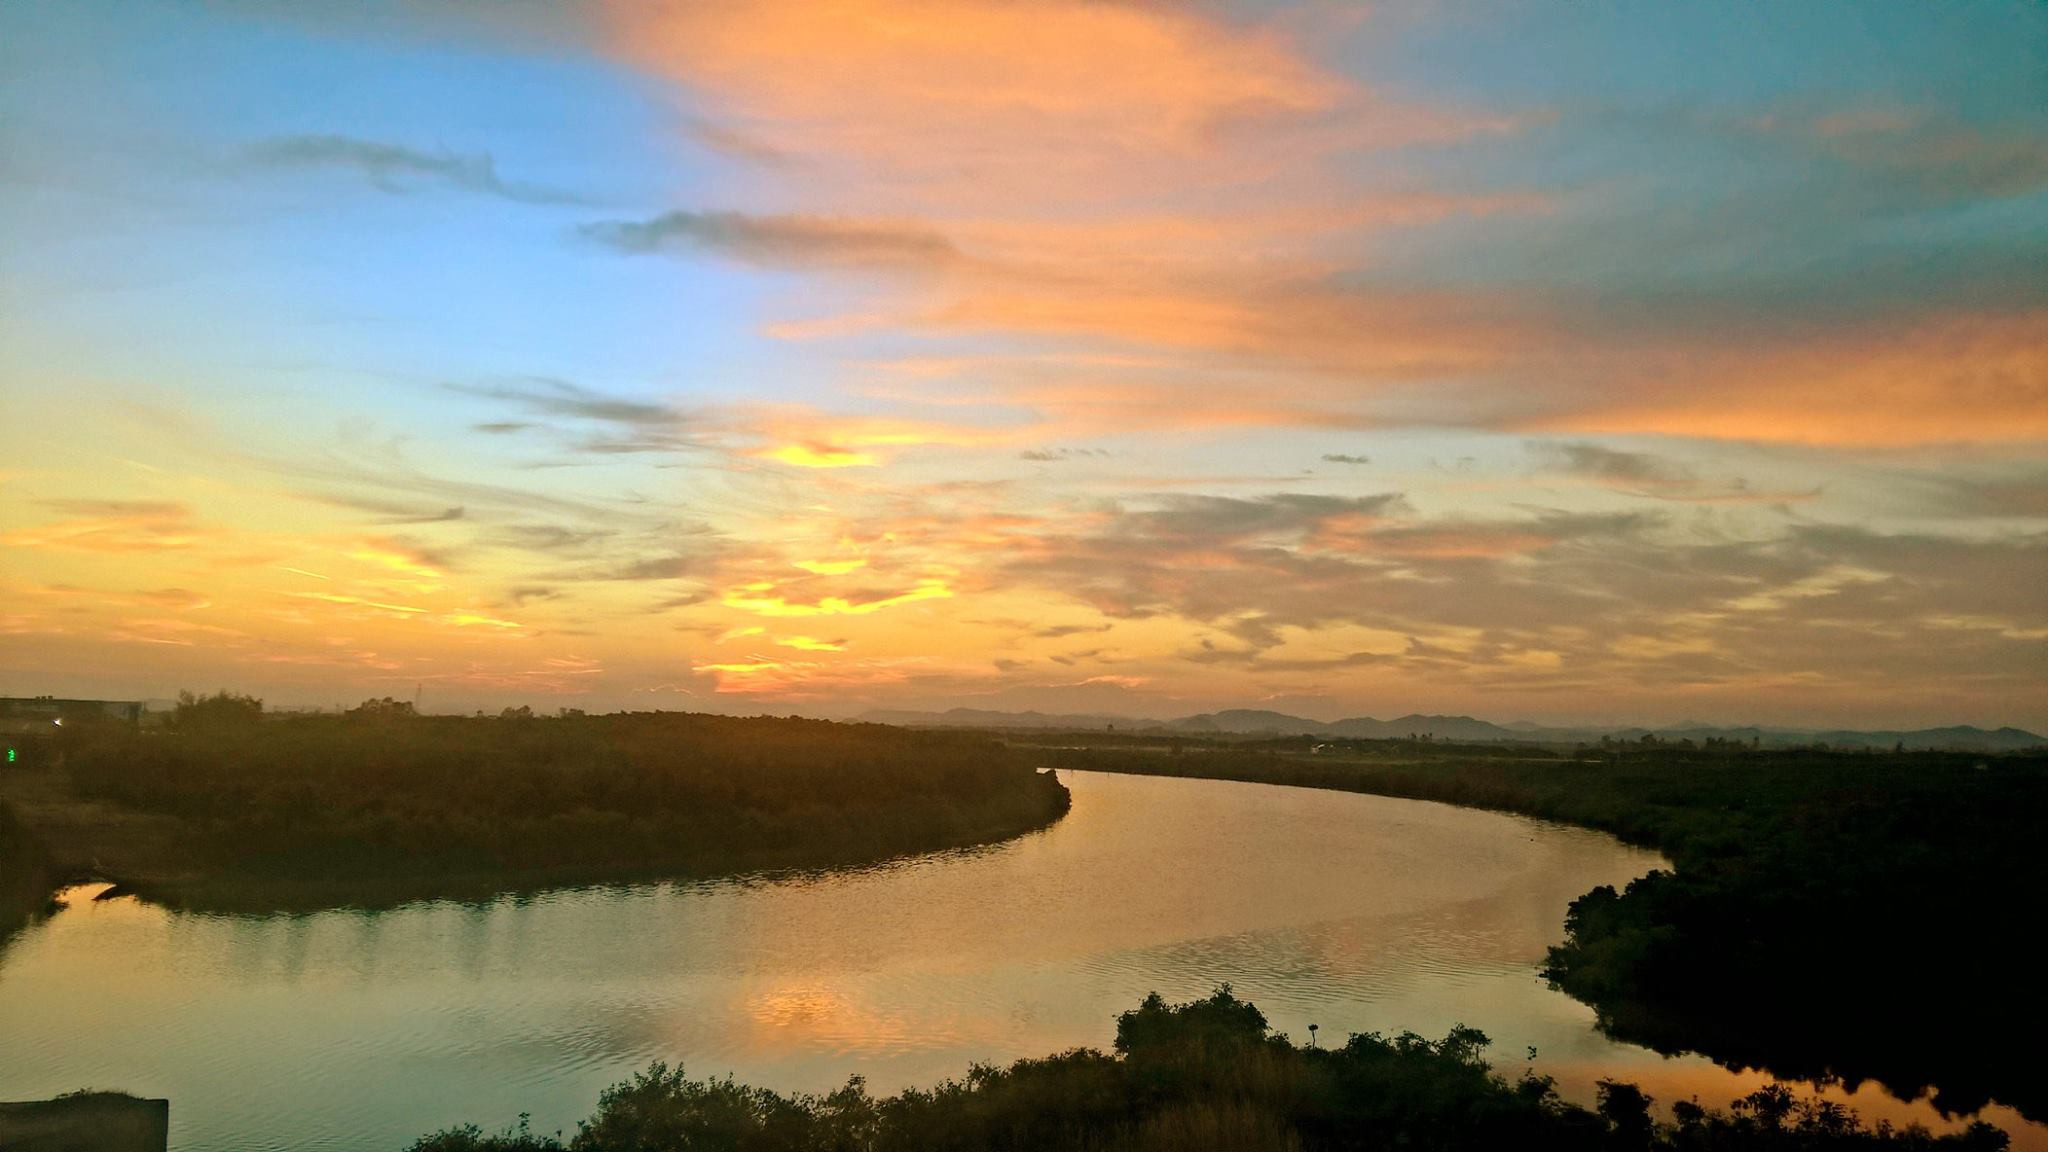 Sông Mơ (Quỳnh Lưu) lững lờ trôi trong ánh chiều xanh hồng đẹp mắt. Ảnh: Xuân Hình